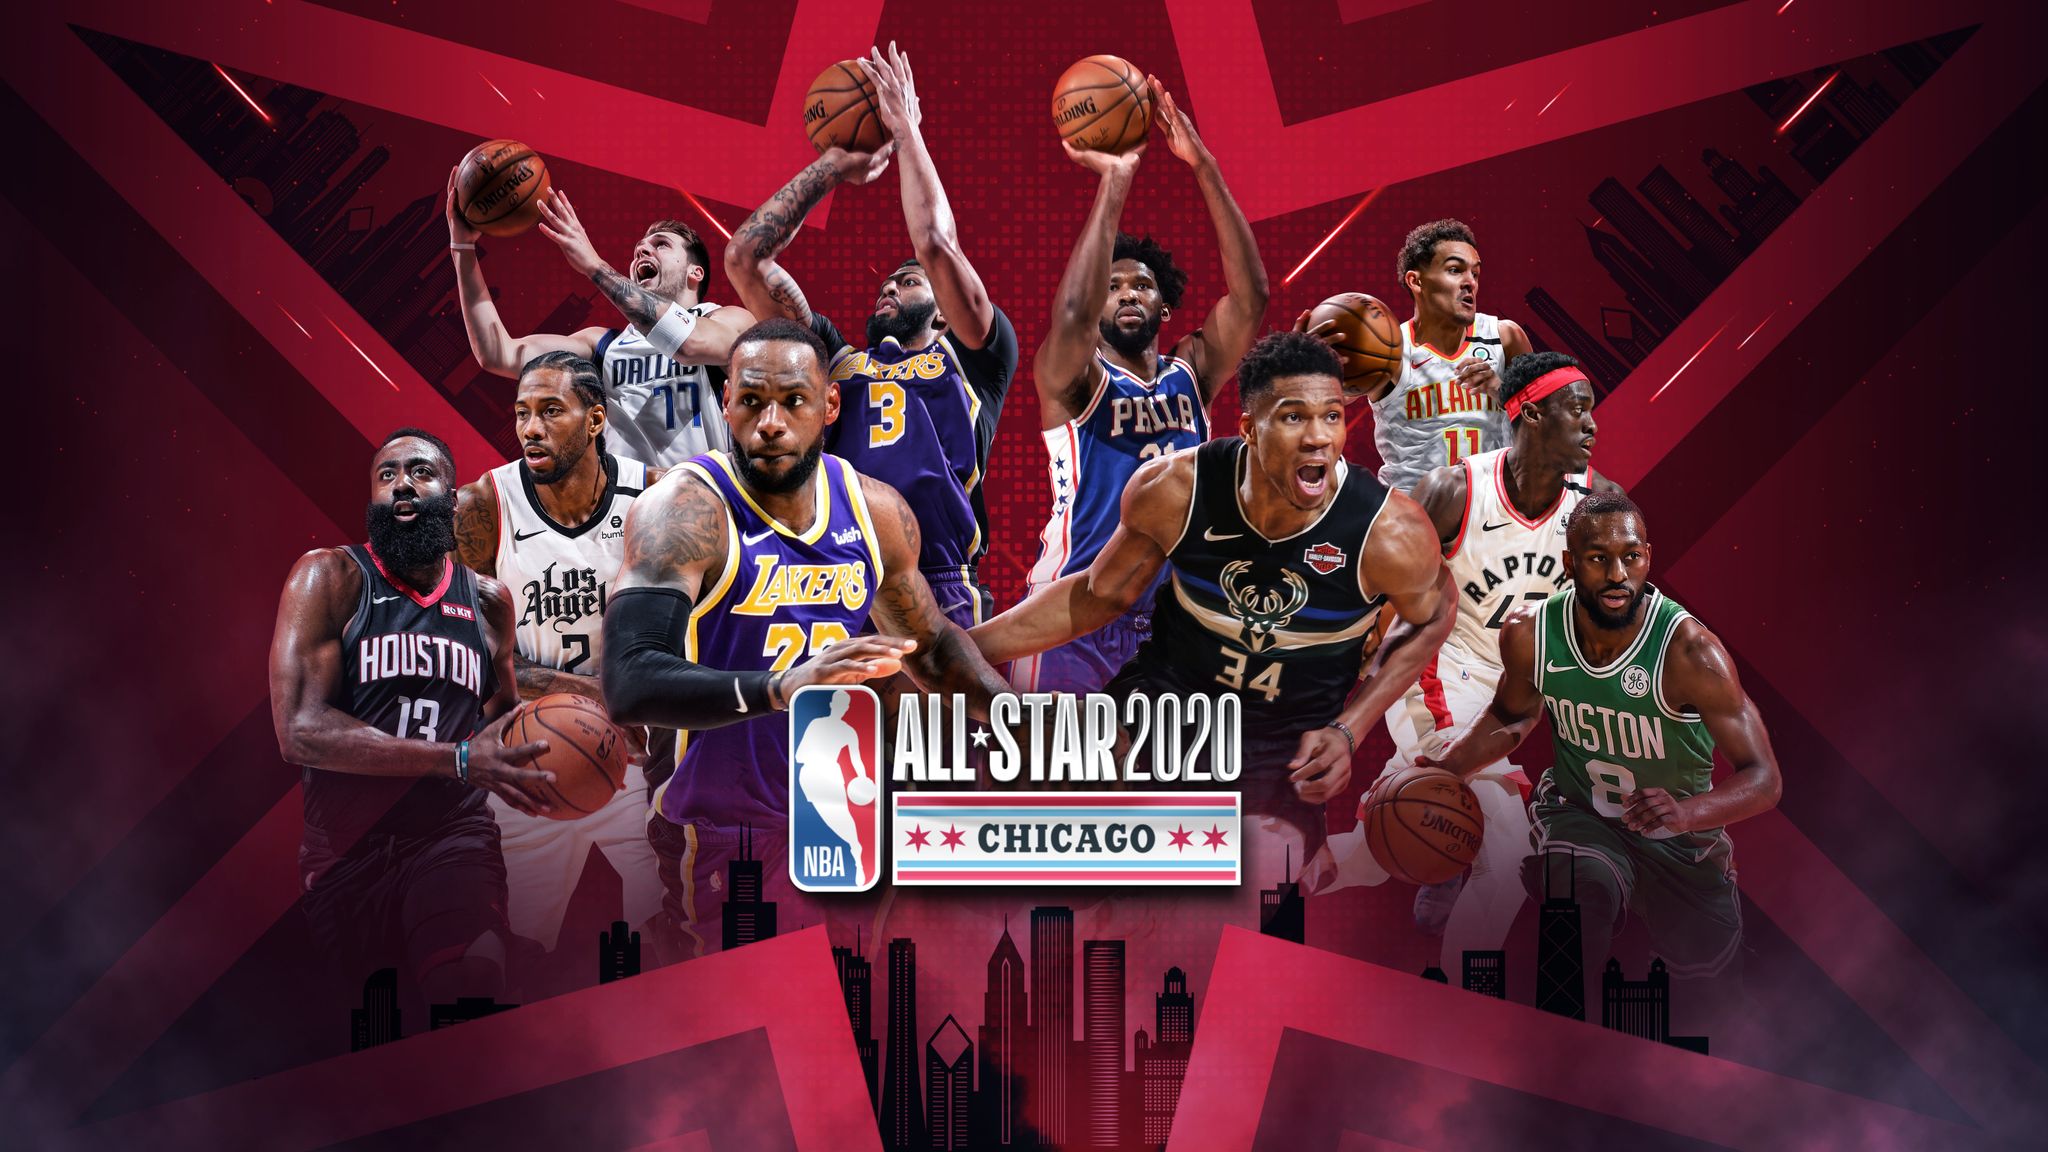 2023 NBA All Star Yellow 0#LILLARD Hot Pressed Jersey